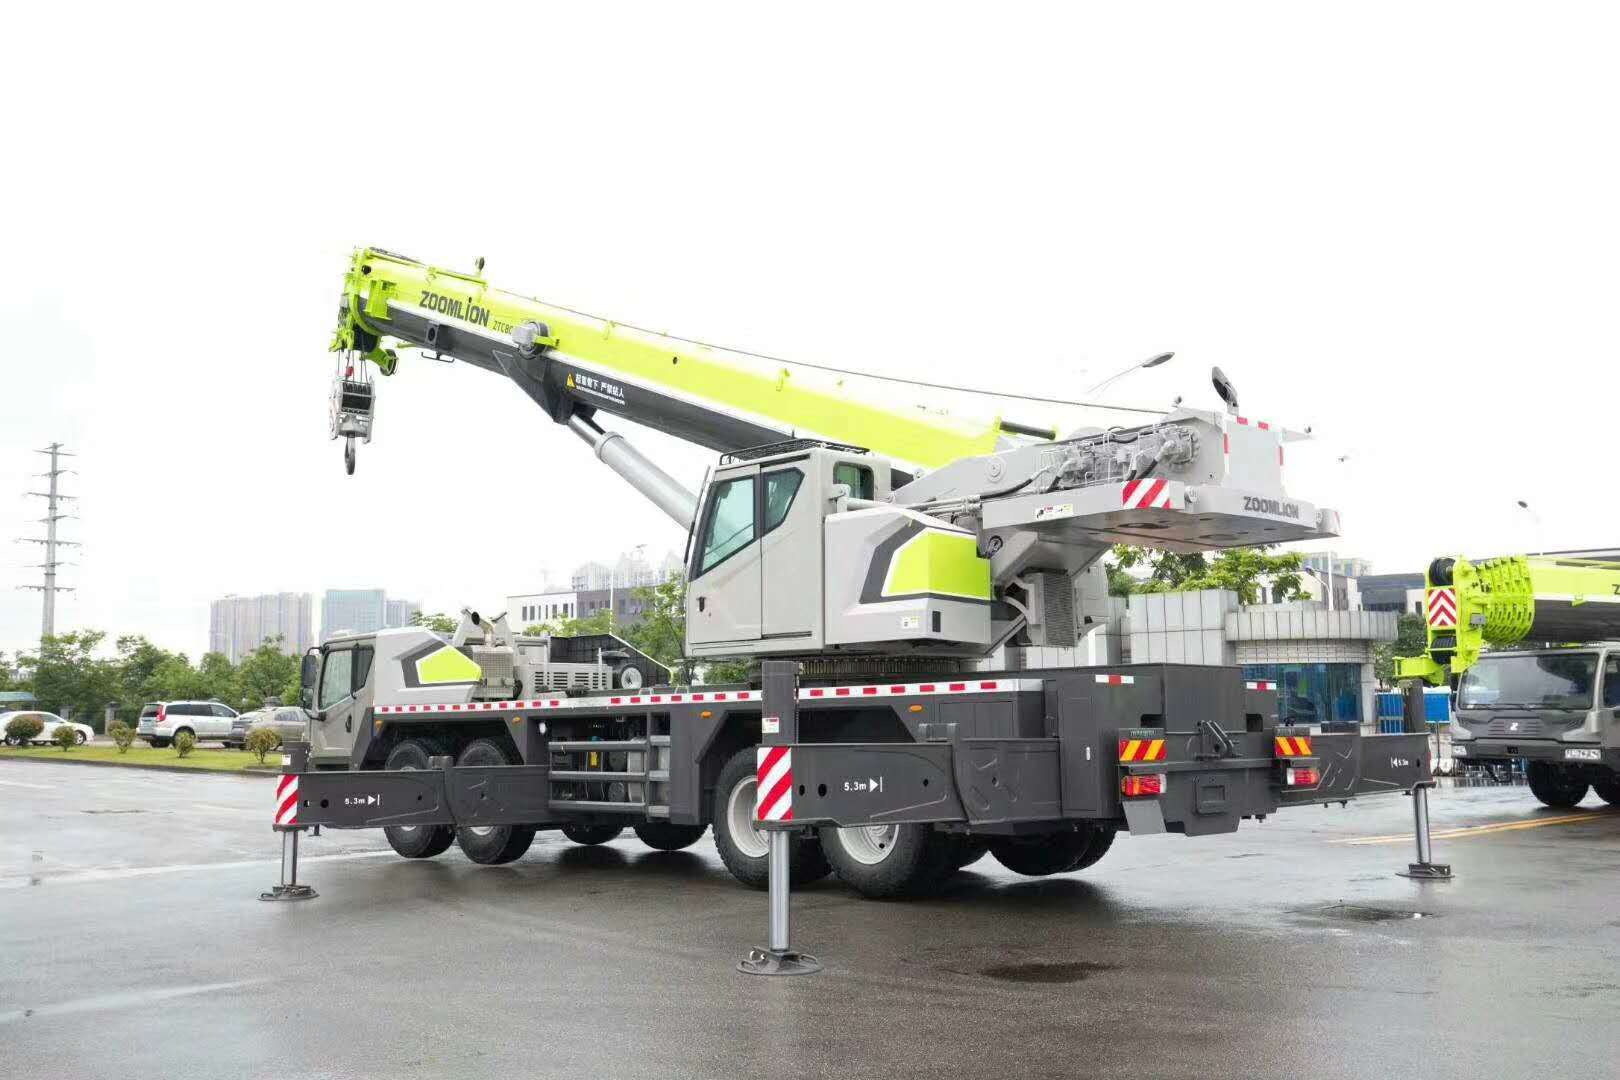 
                80 Ton Crane Truck Crane Zoomlion Ztc800V653
            